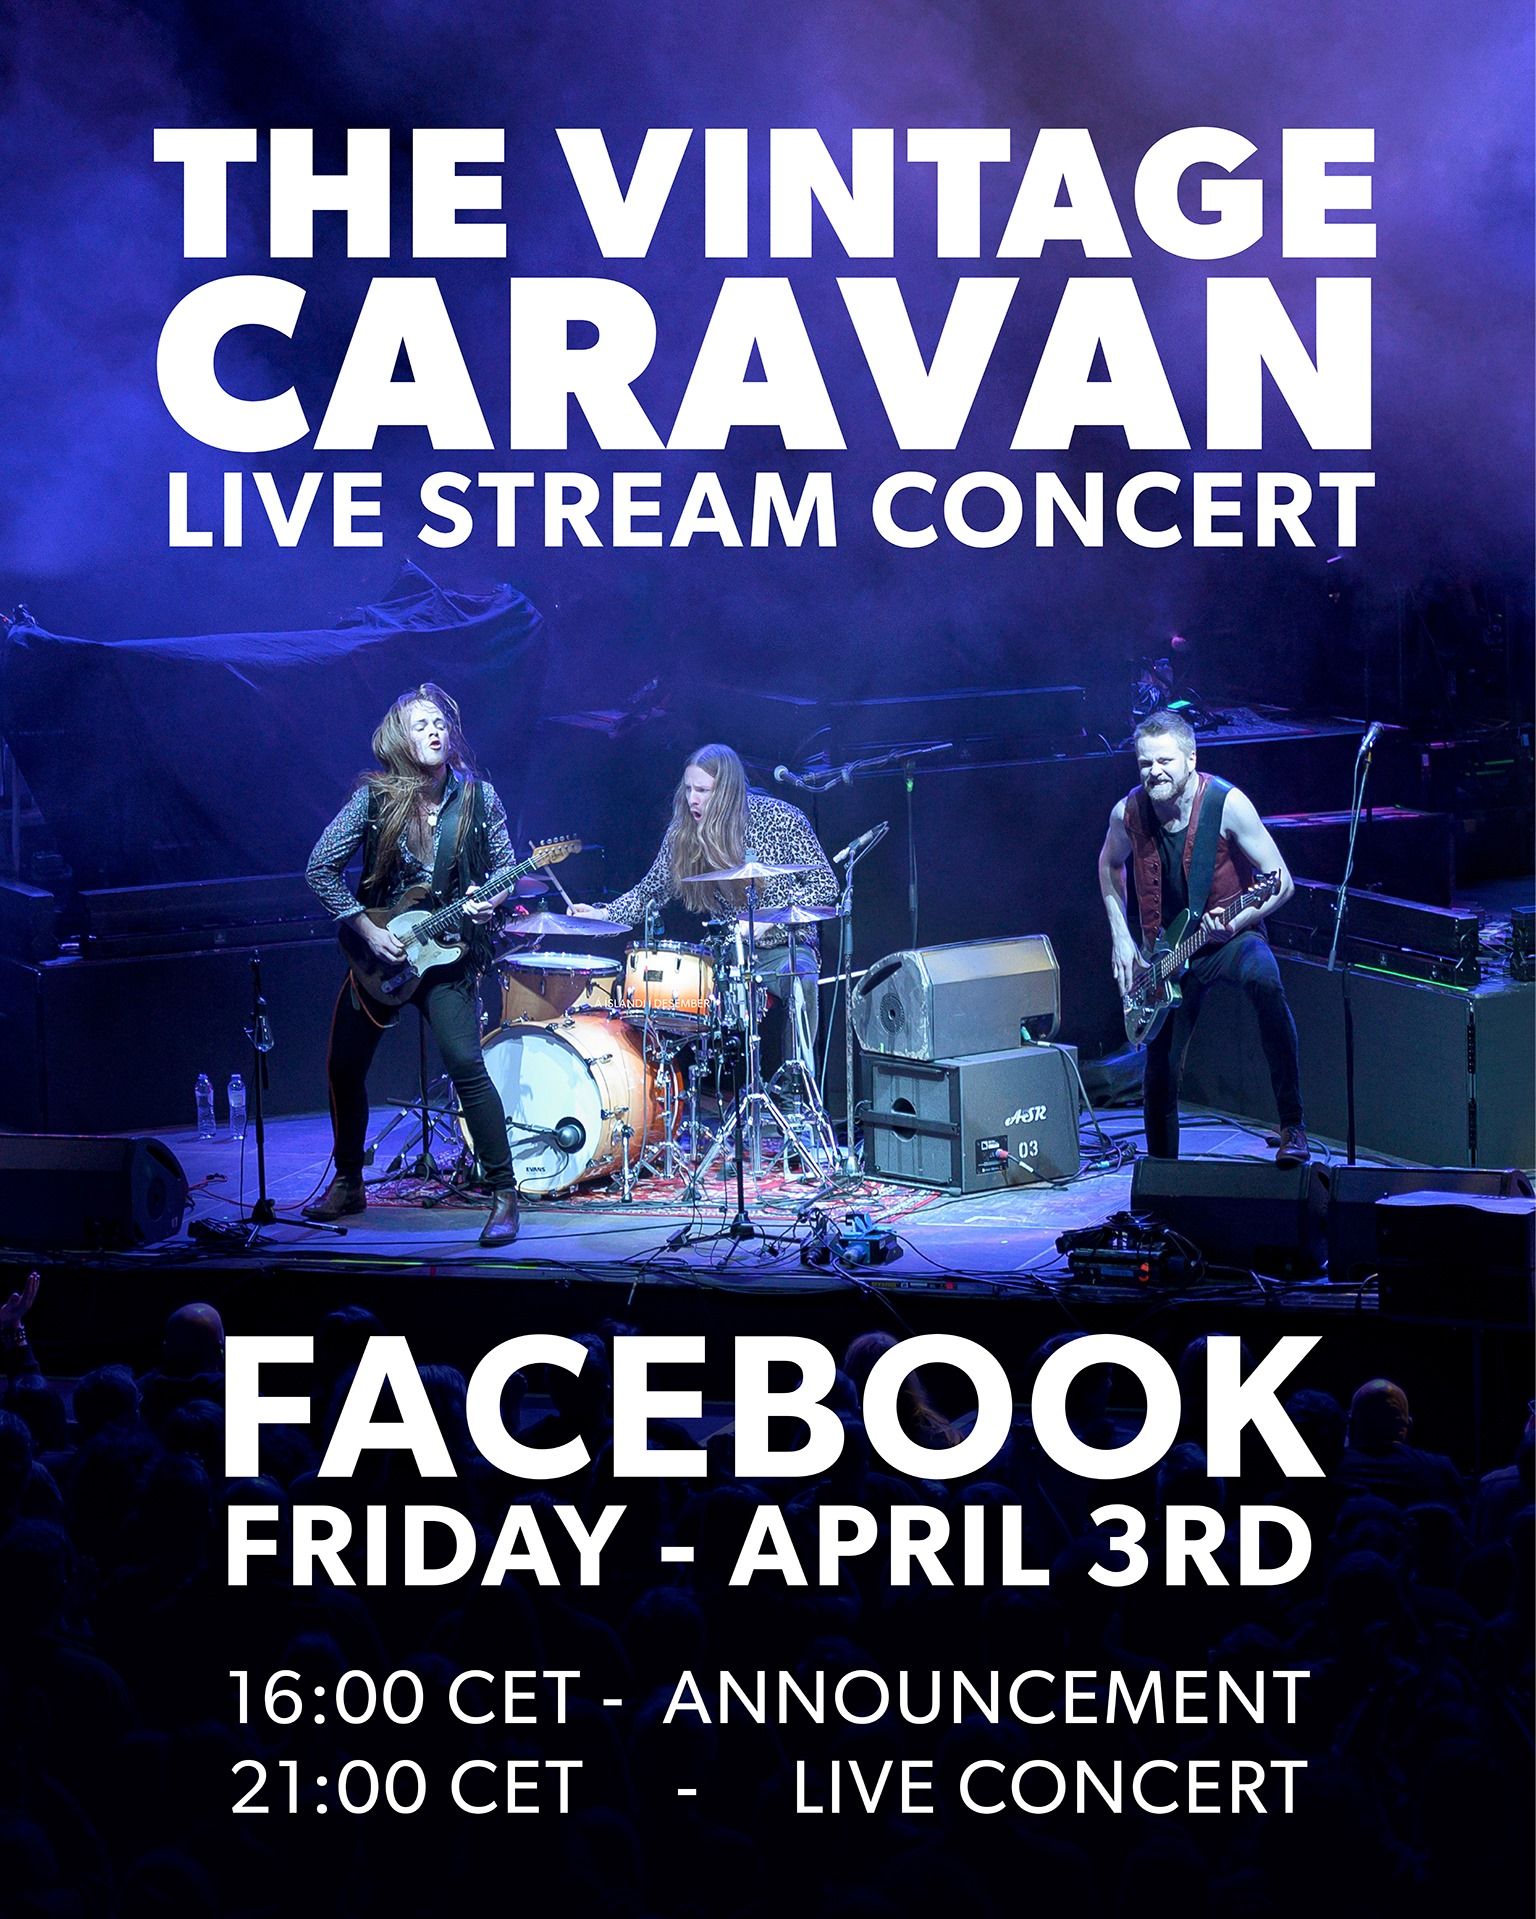 Konzert-Livestream und große Ankündigung am 3. April